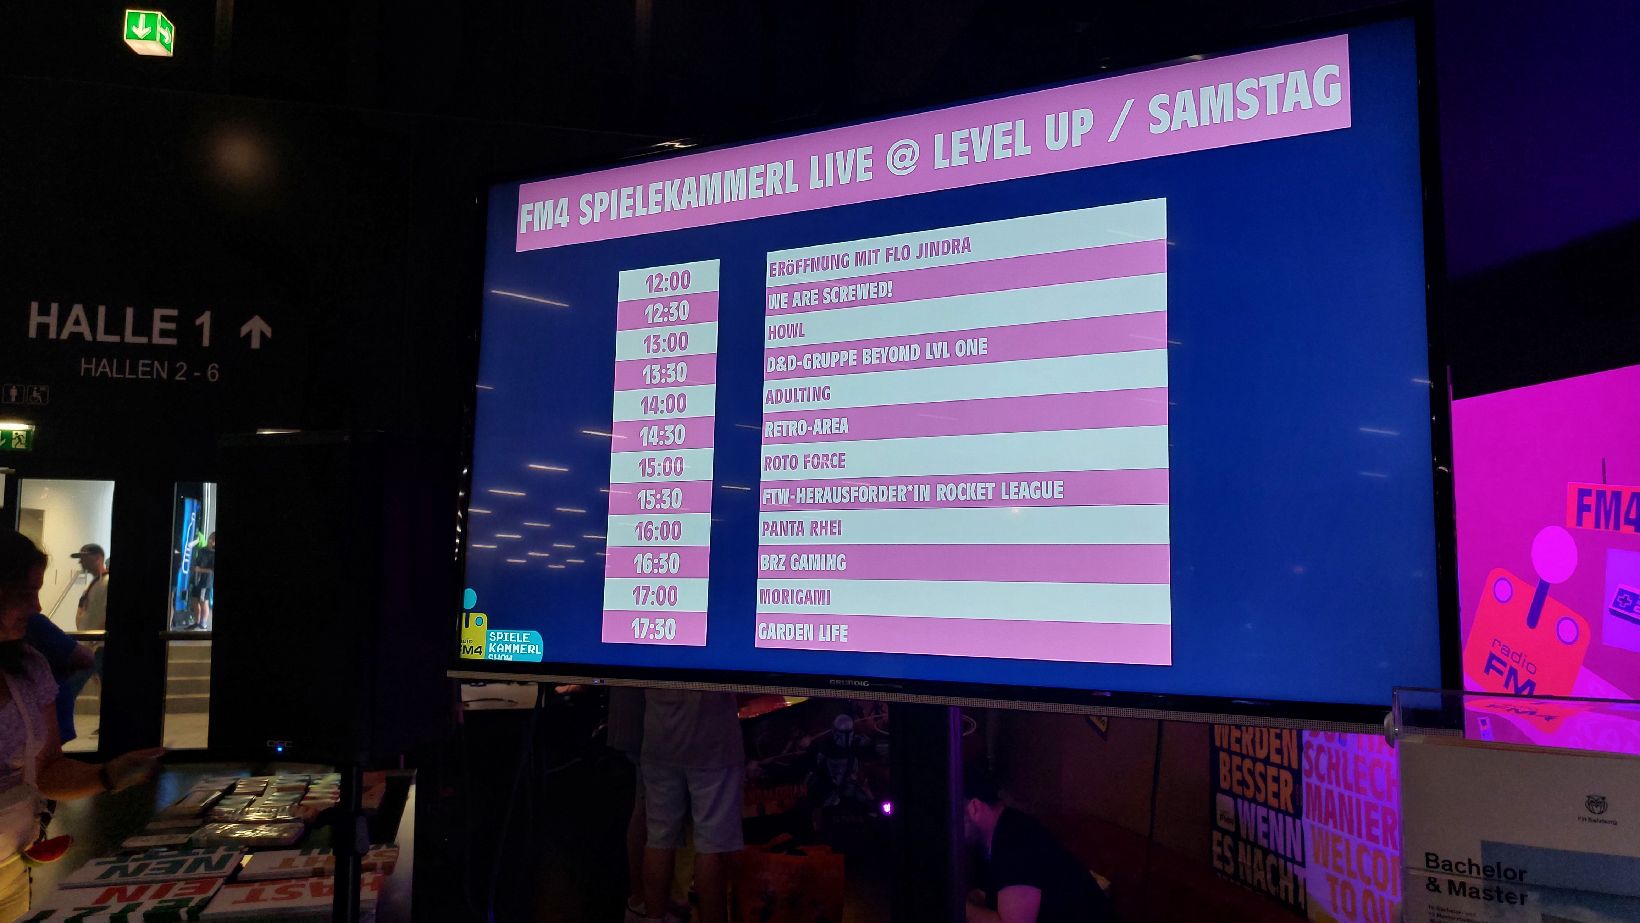 Bildschirmaufnahme: FM4 Spielekammerl Live @ LEVEL UP / Samstag - BRZ Gaming ab 16:30 Uhr